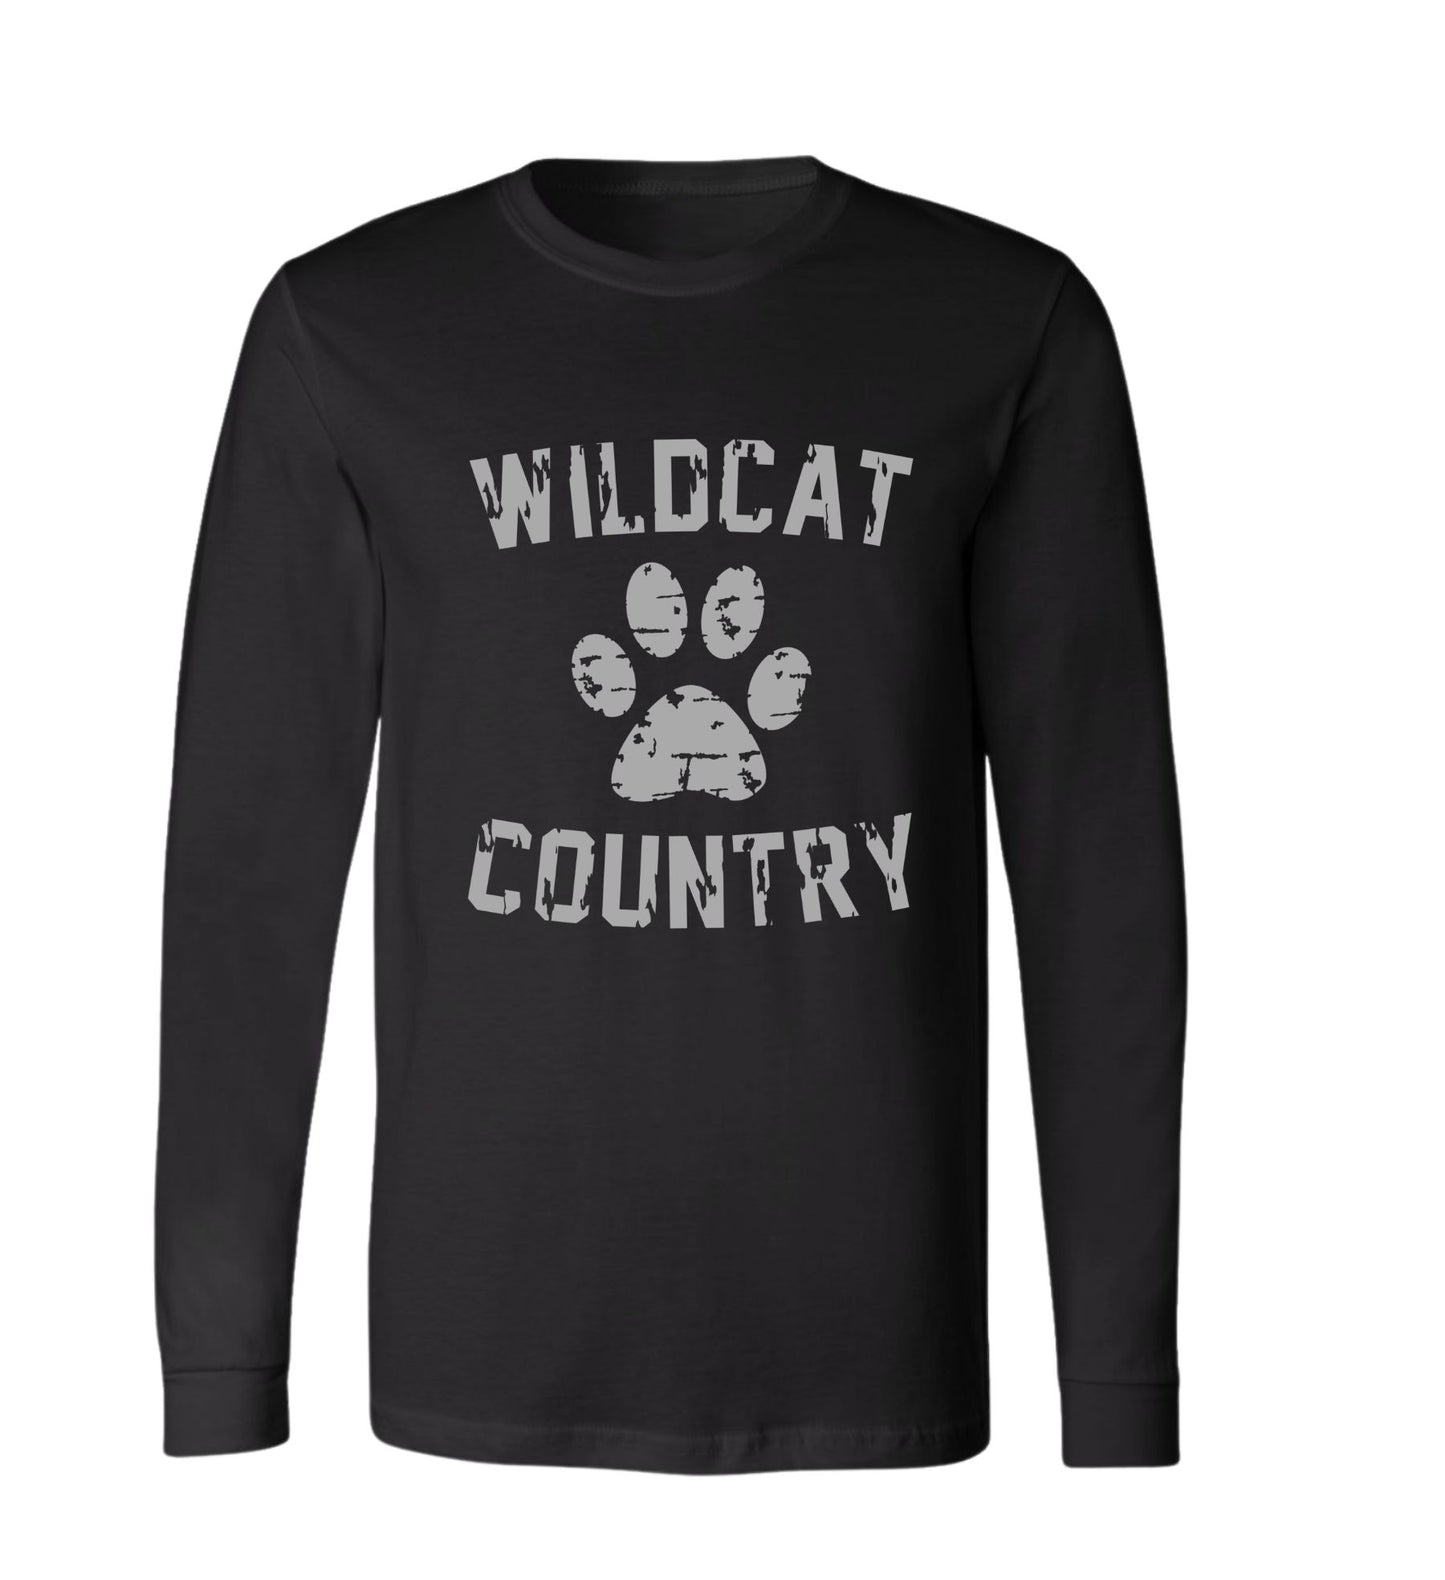 Galva Wildcats - Wildcat Country - Bella Brand Long sleeve Tee